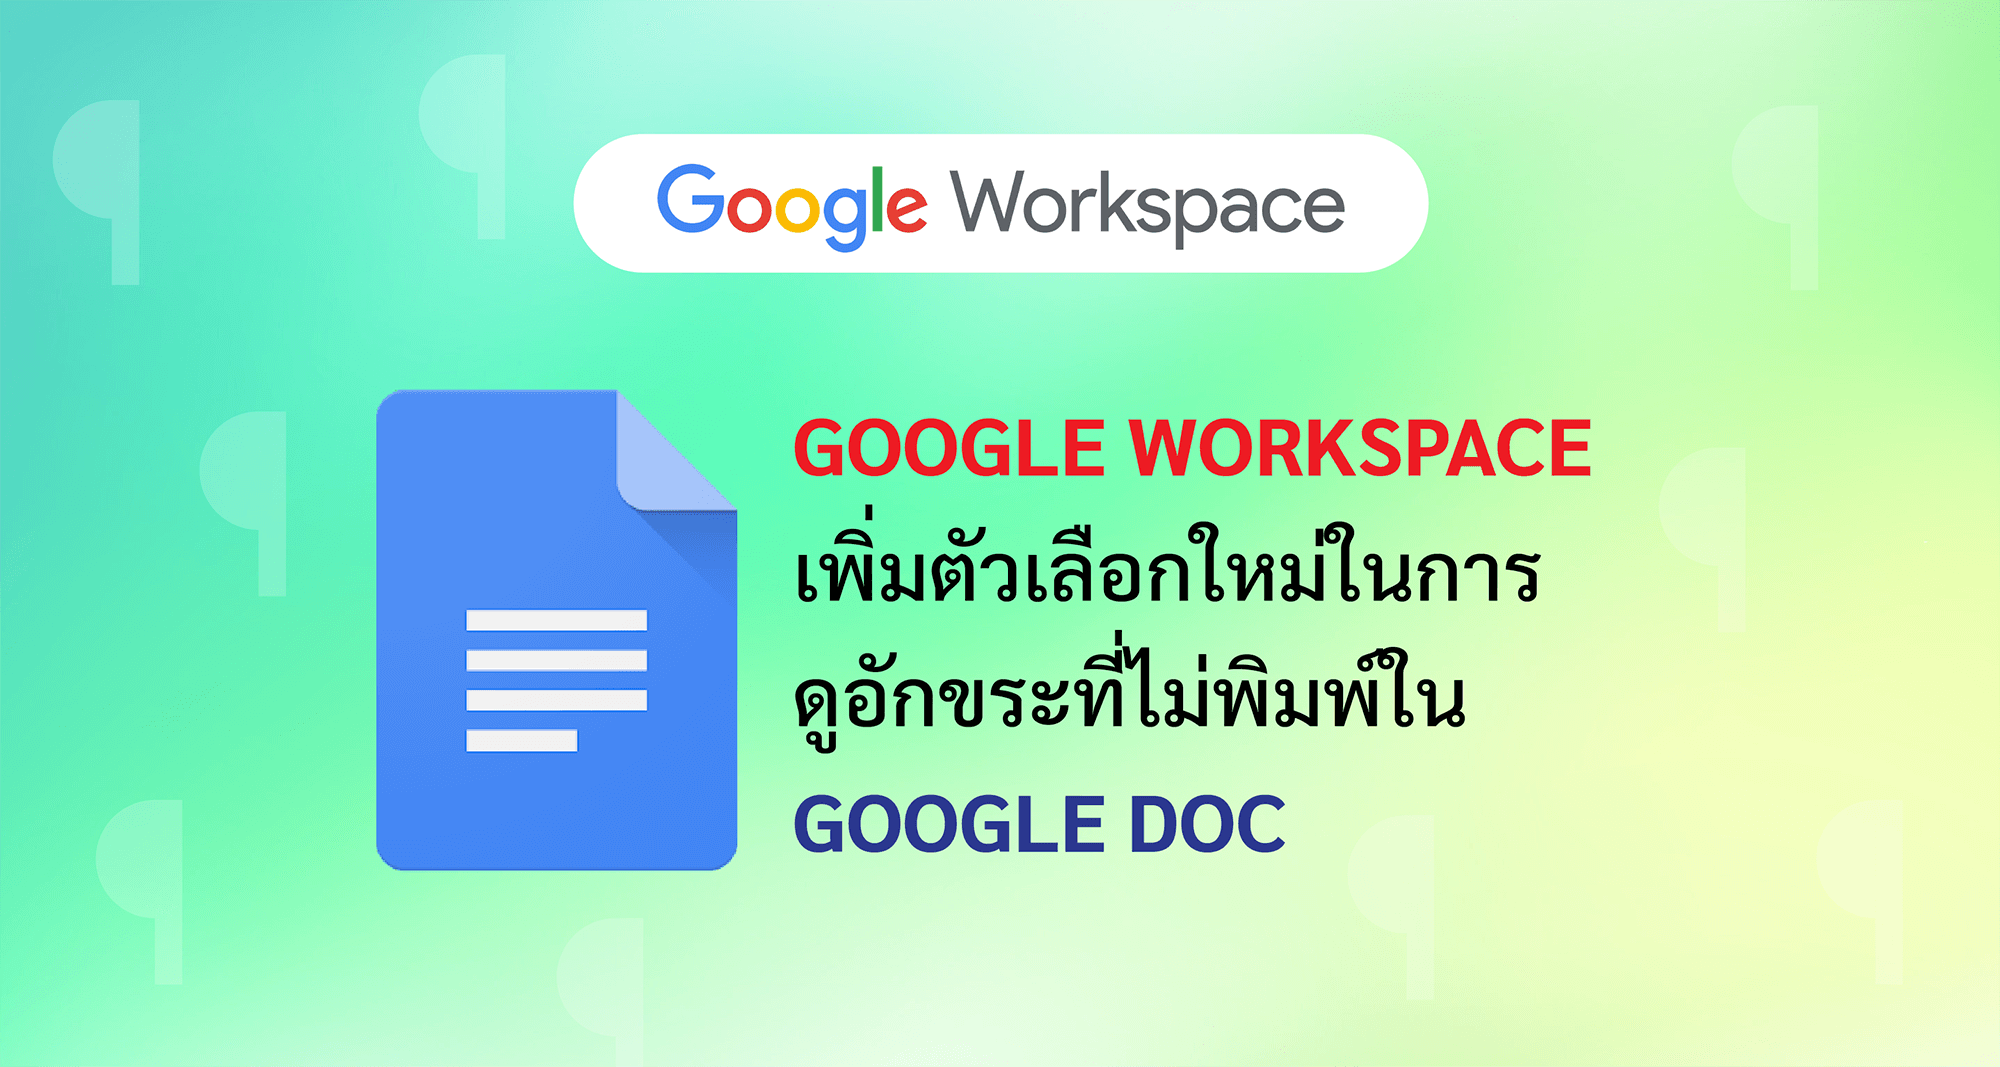 Google Workspace เพิ่มตัวเลือกใหม่ในการ ดูอักขระที่ไม่พิมพ์ใน Google Doc